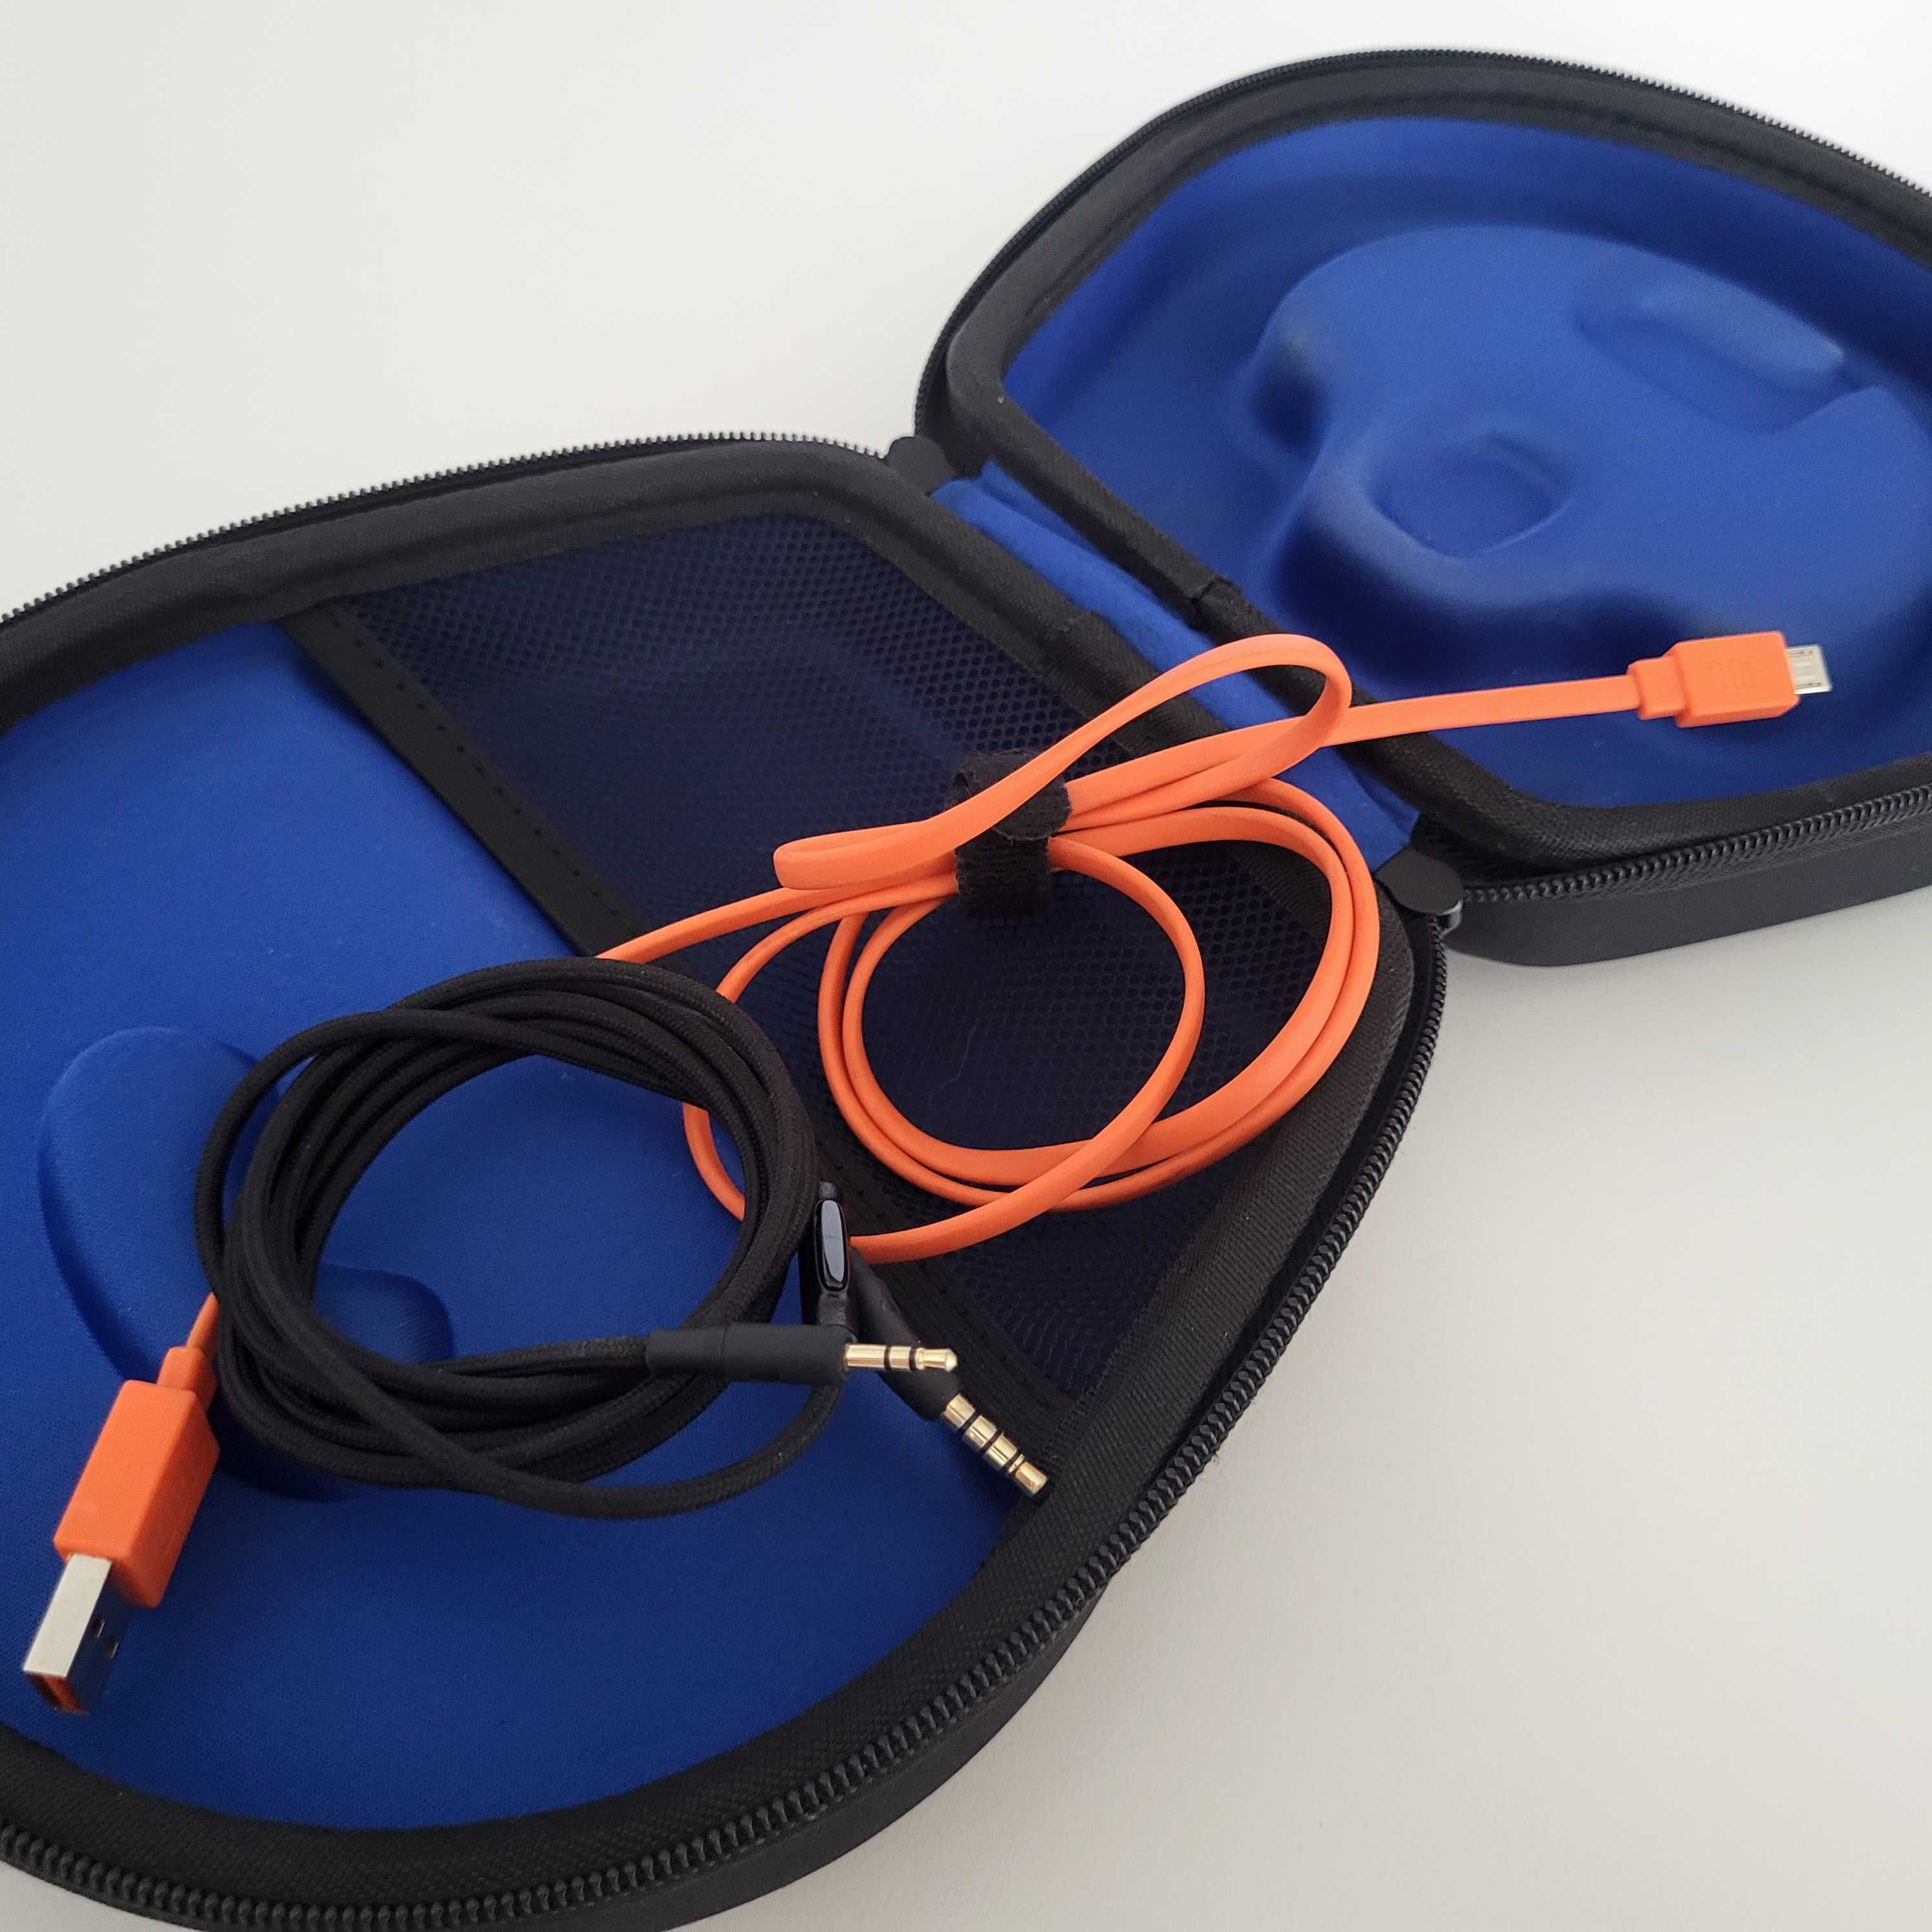 słuchawki bezprzewodowe JBL E45BT ZESTAW